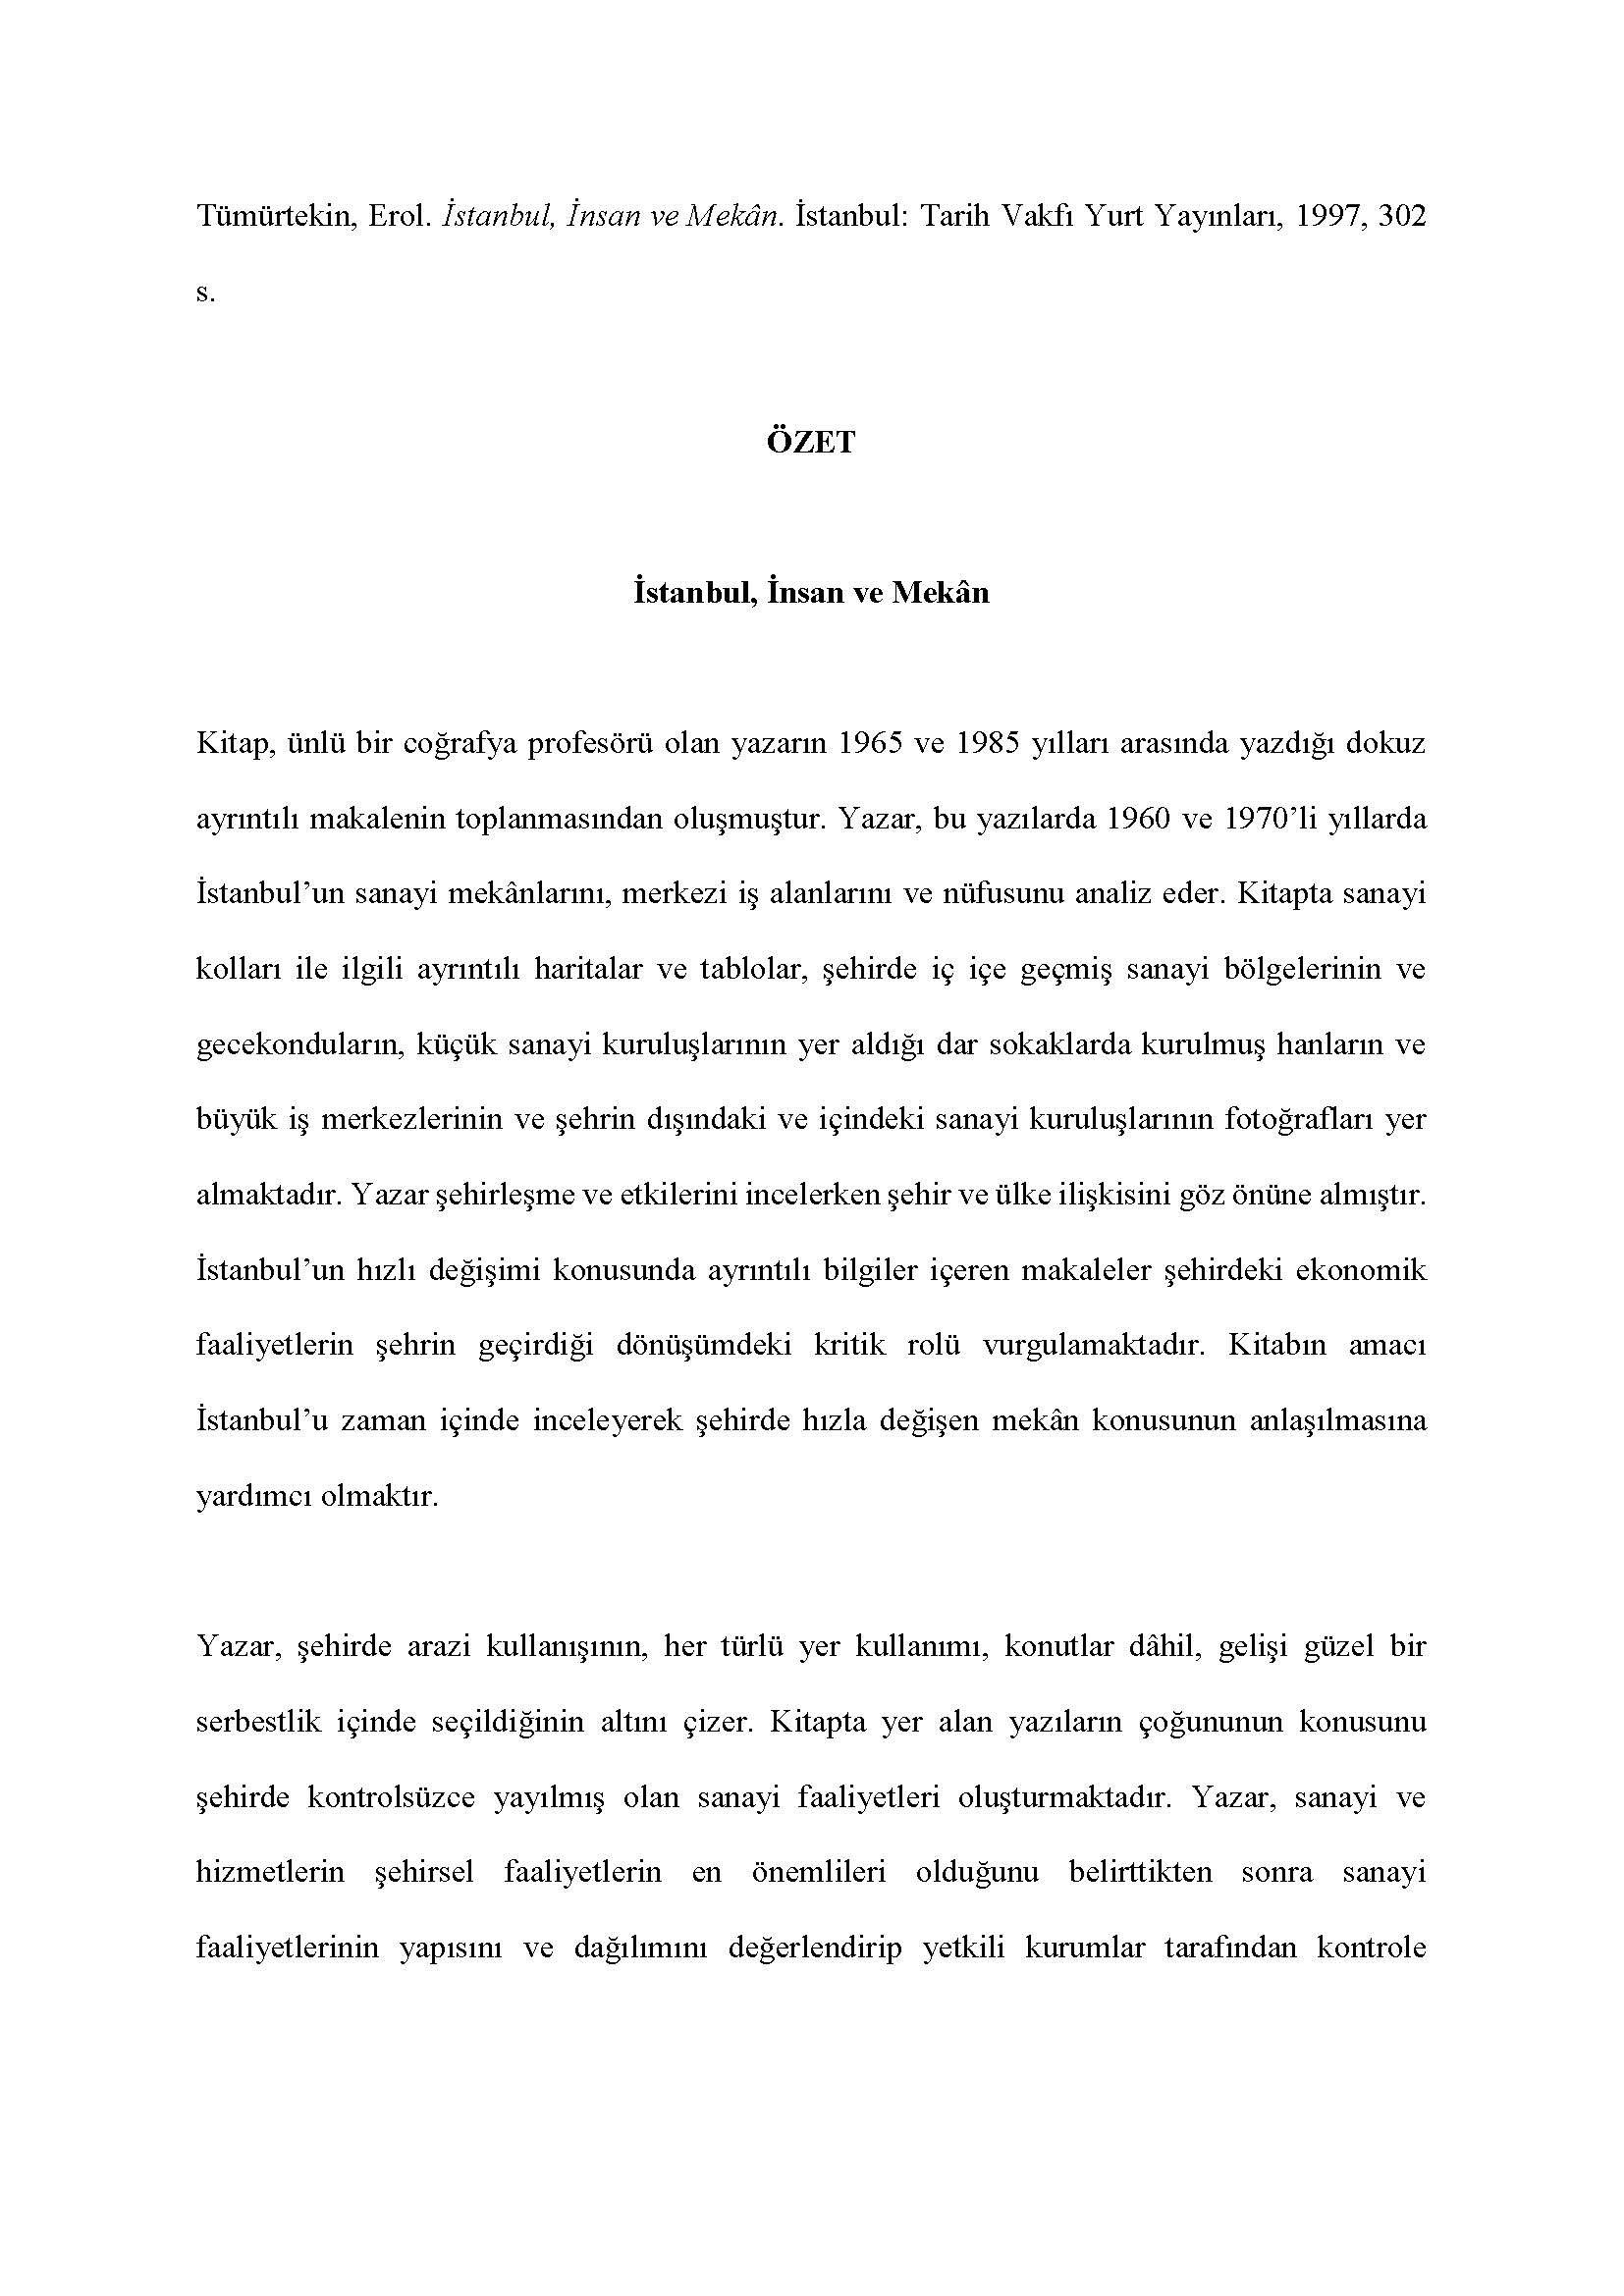 Erol Tümürtekin - <div><br></div><div><div>Tümürtekin, Erol. İstanbul, İnsan ve Mekân. İstanbul: Tarih Vakfı Yurt Yayınları, 1997, 302 s.</div><div><br></div><div style="text-align: center; "><span style="font-weight: bold;">ÖZET</span></div><div style="text-align: center; "><span style="font-weight: bold;"><br></span></div><div style="text-align: center; "><span style="font-weight: bold;">İstanbul, İnsan ve Mekân</span></div><div><br></div><div>Kitap, ünlü bir coğrafya profesörü olan yazarın 1965 ve 1985 yılları arasında yazdığı dokuz ayrıntılı makalenin toplanmasından oluşmuştur. Yazar, bu yazılarda 1960 ve 1970’li yıllarda İstanbul’un sanayi mekânlarını, merkezi iş alanlarını ve nüfusunu analiz eder. Kitapta sanayi kolları ile ilgili ayrıntılı haritalar ve tablolar, şehirde iç içe geçmiş sanayi bölgelerinin ve gecekonduların, küçük sanayi kuruluşlarının yer aldığı dar sokaklarda kurulmuş hanların ve büyük iş merkezlerinin ve şehrin dışındaki ve içindeki sanayi kuruluşlarının fotoğrafları yer almaktadır. Yazar şehirleşme ve etkilerini incelerken şehir ve ülke ilişkisini göz önüne almıştır. İstanbul’un hızlı değişimi konusunda ayrıntılı bilgiler içeren makaleler şehirdeki ekonomik faaliyetlerin şehrin geçirdiği dönüşümdeki kritik rolü vurgulamaktadır. Kitabın amacı İstanbul’u zaman içinde inceleyerek şehirde hızla değişen mekân konusunun anlaşılmasına yardımcı olmaktır.</div><div><br></div><div>Yazar, şehirde arazi kullanışının, her türlü yer kullanımı, konutlar dâhil, gelişi güzel bir serbestlik içinde seçildiğinin altını çizer. Kitapta yer alan yazıların çoğununun konusunu şehirde kontrolsüzce yayılmış olan sanayi faaliyetleri oluşturmaktadır. Yazar, sanayi ve hizmetlerin şehirsel faaliyetlerin en önemlileri olduğunu belirttikten sonra sanayi faaliyetlerinin yapısını ve dağılımını değerlendirip yetkili kurumlar tarafından kontrole alınması gerektiğini vurgulamaktadır. Çeşitli planlama girişimleri ve yer seçimini kontrol altına alma çalışmaları bulunsa da, bunların yetersiz olduğunu belirtir.</div><div><br></div><div>Kitabın son bölümündeki yazılar nüfus ile ilgilidir. Şehrin büyük bir hızla artan nüfus yapısının şehrin mekânsal büyüme yönlerini nasıl değiştirdiğini, yer yer şehre yeni bir toplumsal ve ekonomik yapı kazandırdığını ve de beraberinde gelişen sosyal problemleri tartışır. Şehrin bir metropoliten olarak büyümesini tartışırken şehrin il sınırları dışındaki yakın çevresiyle ilişkilerinin yoğunlaştığına dikkati çeker. Gelecekte oluşacak sorunlara ve şehrin Trakya’ya doğru genişlemesinde doğacak sorunlara dikkati çekerek bütüncül bir planlamanın zorunluluğunun altını çizer.</div><div><br></div><div>Sanayi konusunu Boğaziçi’nde coğrafi görünümü değiştiren bir faktör olarak da inceleyen yazar, Arnavutköy, Anadoluhisarı, Paşabahçe, Üsküdar, Ayazağa, İstinye ve Büyükdere vadisi örneklerini verir. Yazara göre şehrin güzelliğini bozacağı kaygısıyla yapılmasına karşı çıkılan, ancak inşa edilen kıyılara uzanan dolgu yollar ve de Boğaz köprüleri şehrin güzelliğini bozamamıştır. İstanbul’un kentsel yapısı hakkında coğrafi bakış açısından yaptığı analizler, son derece bilimsel verilerle ve dille yazılmış olan kitaba İstanbul’da şehircilik alanında yazılmış diğer çalışmalar arasında orijinal bir yer sağlamıştır.</div><div><br></div><div>Feryal Tansuğ</div></div>